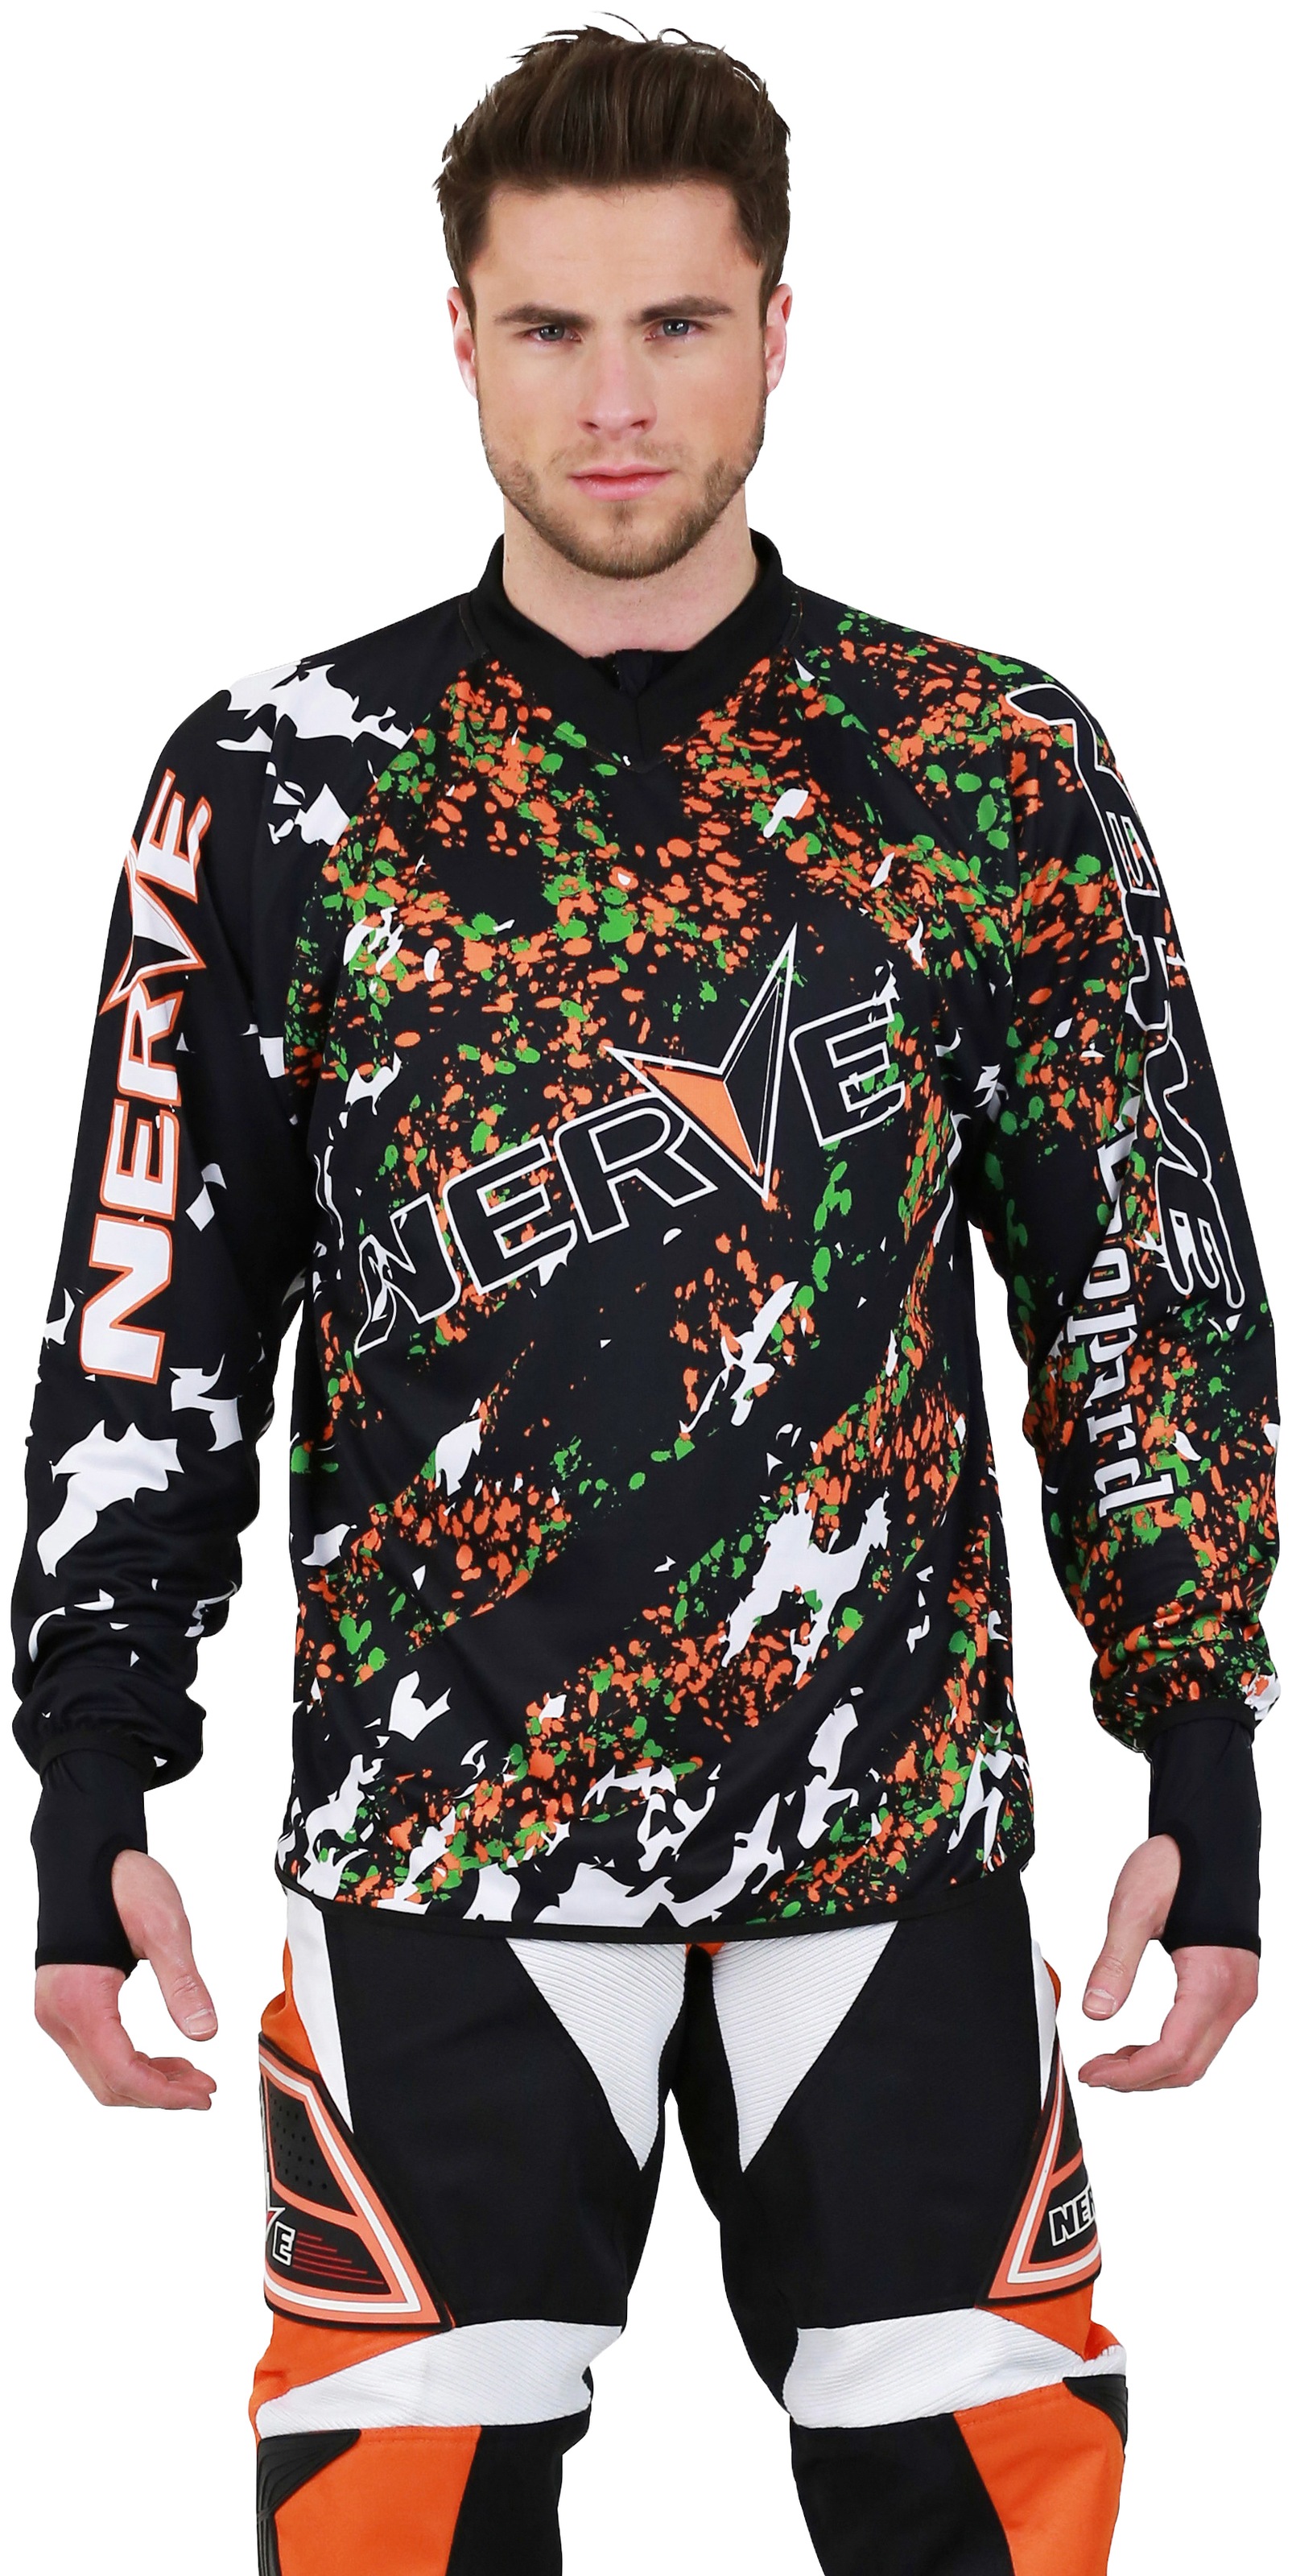 NERVE Motocross-Shirt "Nerve"